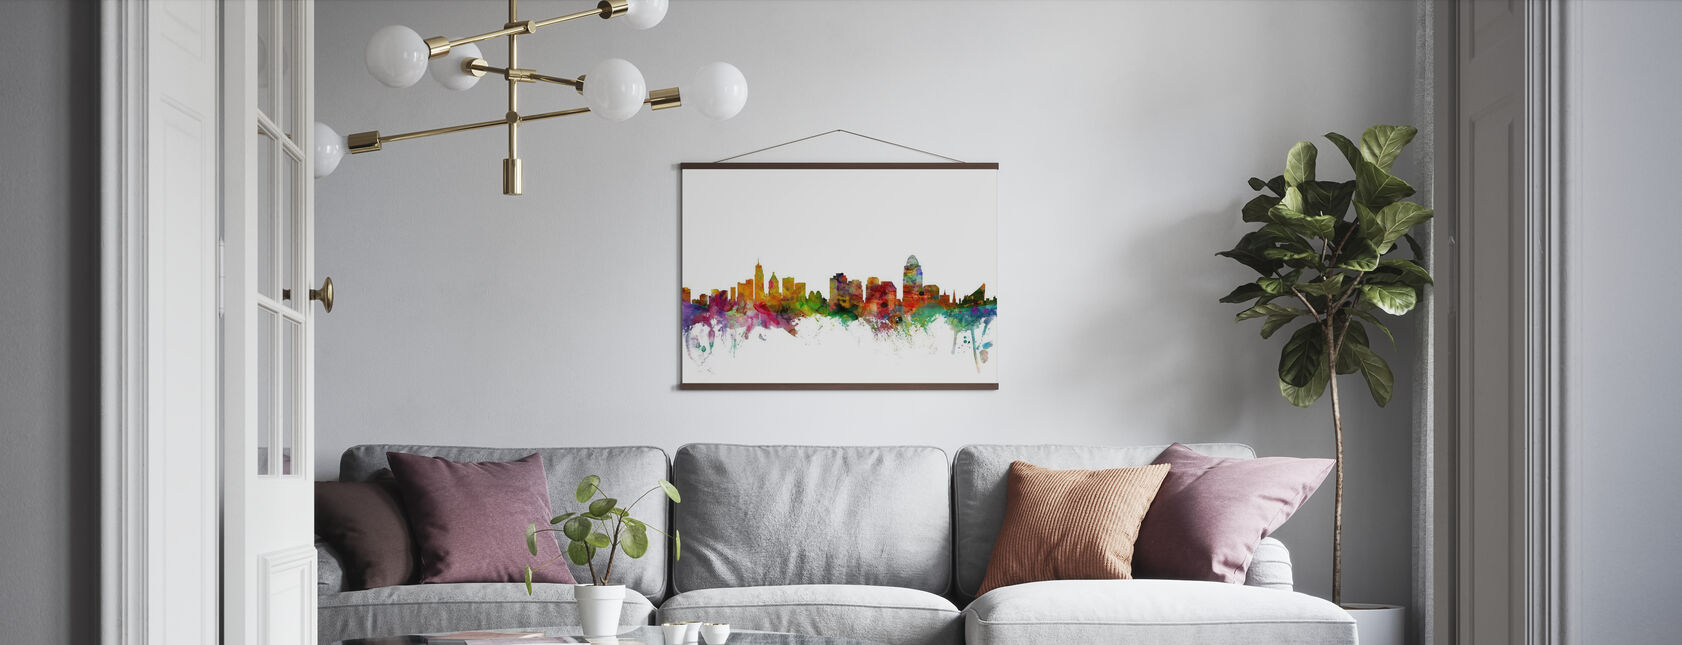 Cincinnati Ohio Skyline - Poster - Living Room